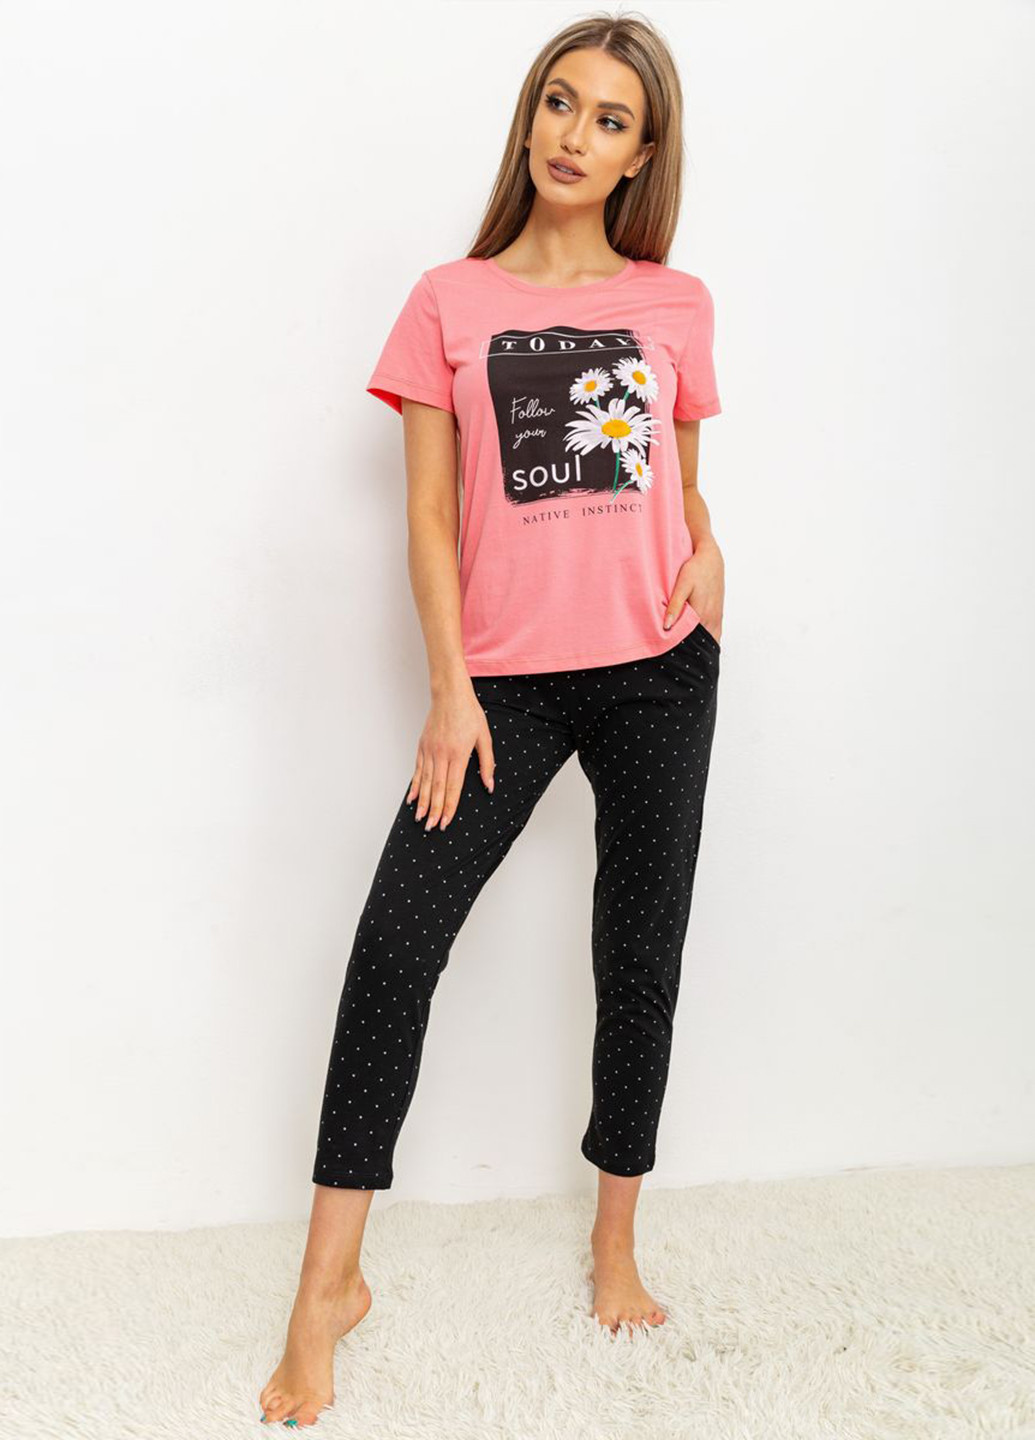 Комбинированная всесезон пижама (футболка, брюки) футболка + брюки Ager